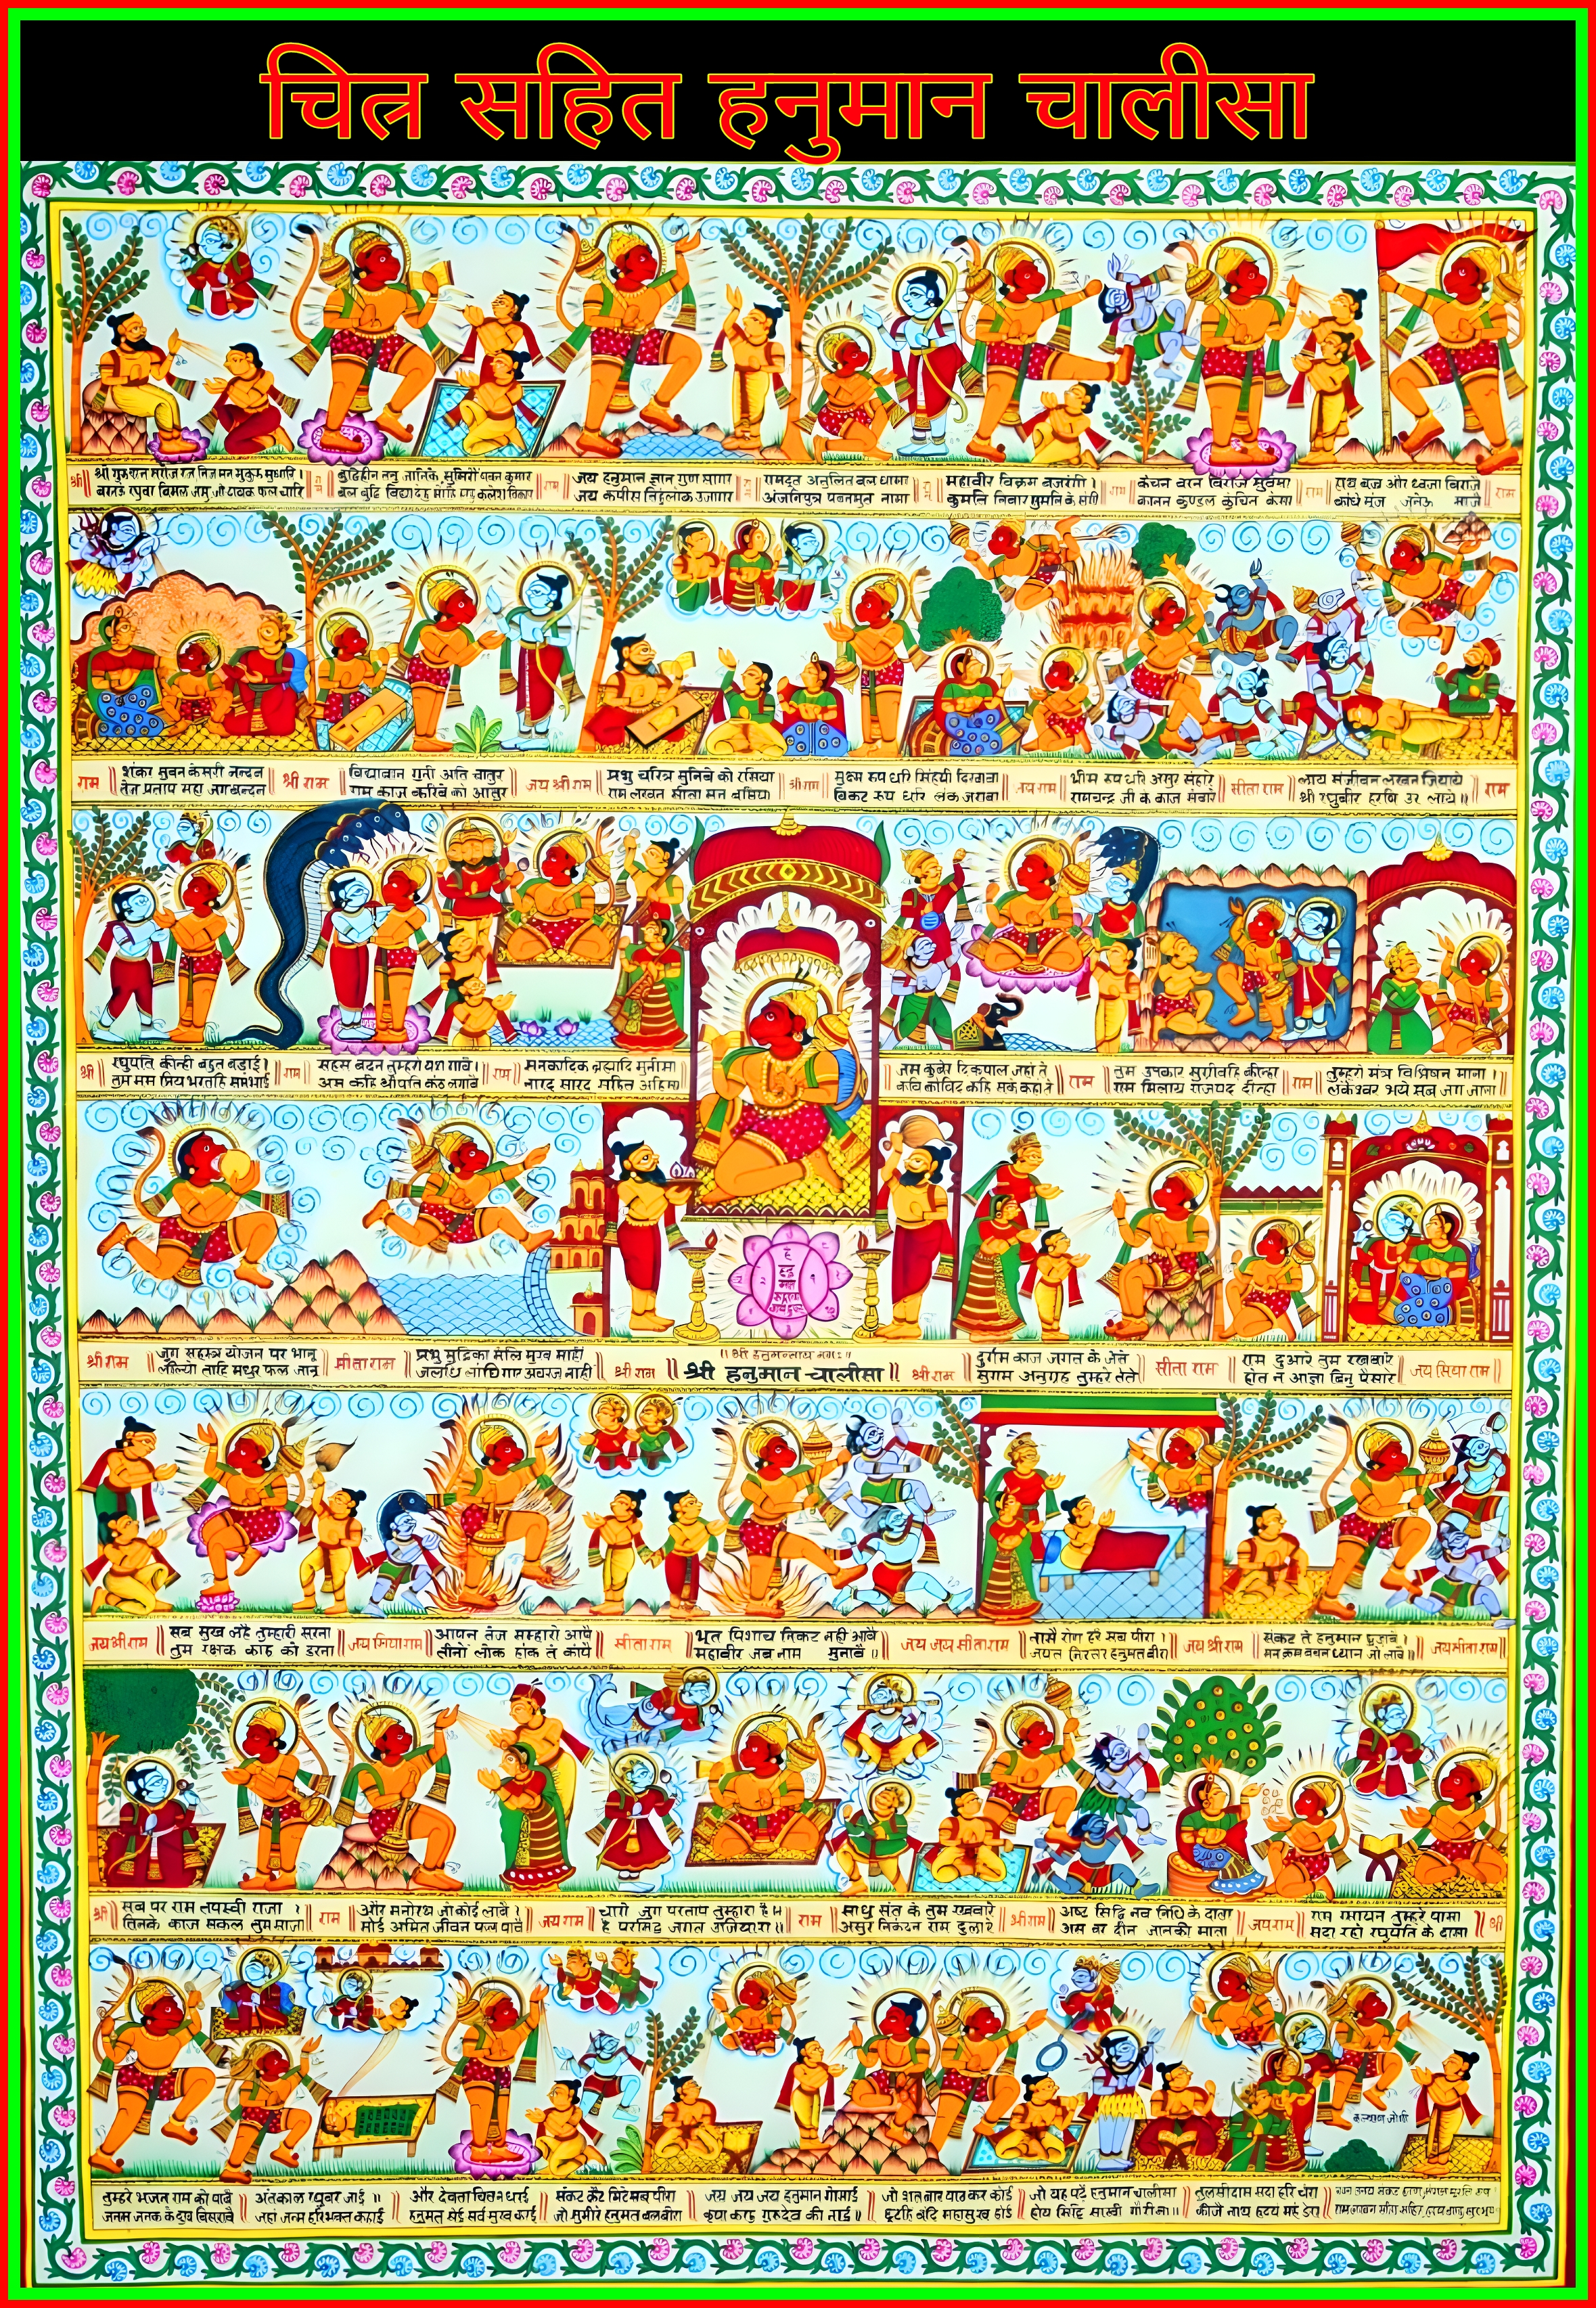 Hanuman Chalisa chitra sahit - Hanuman Chalisa with pictures